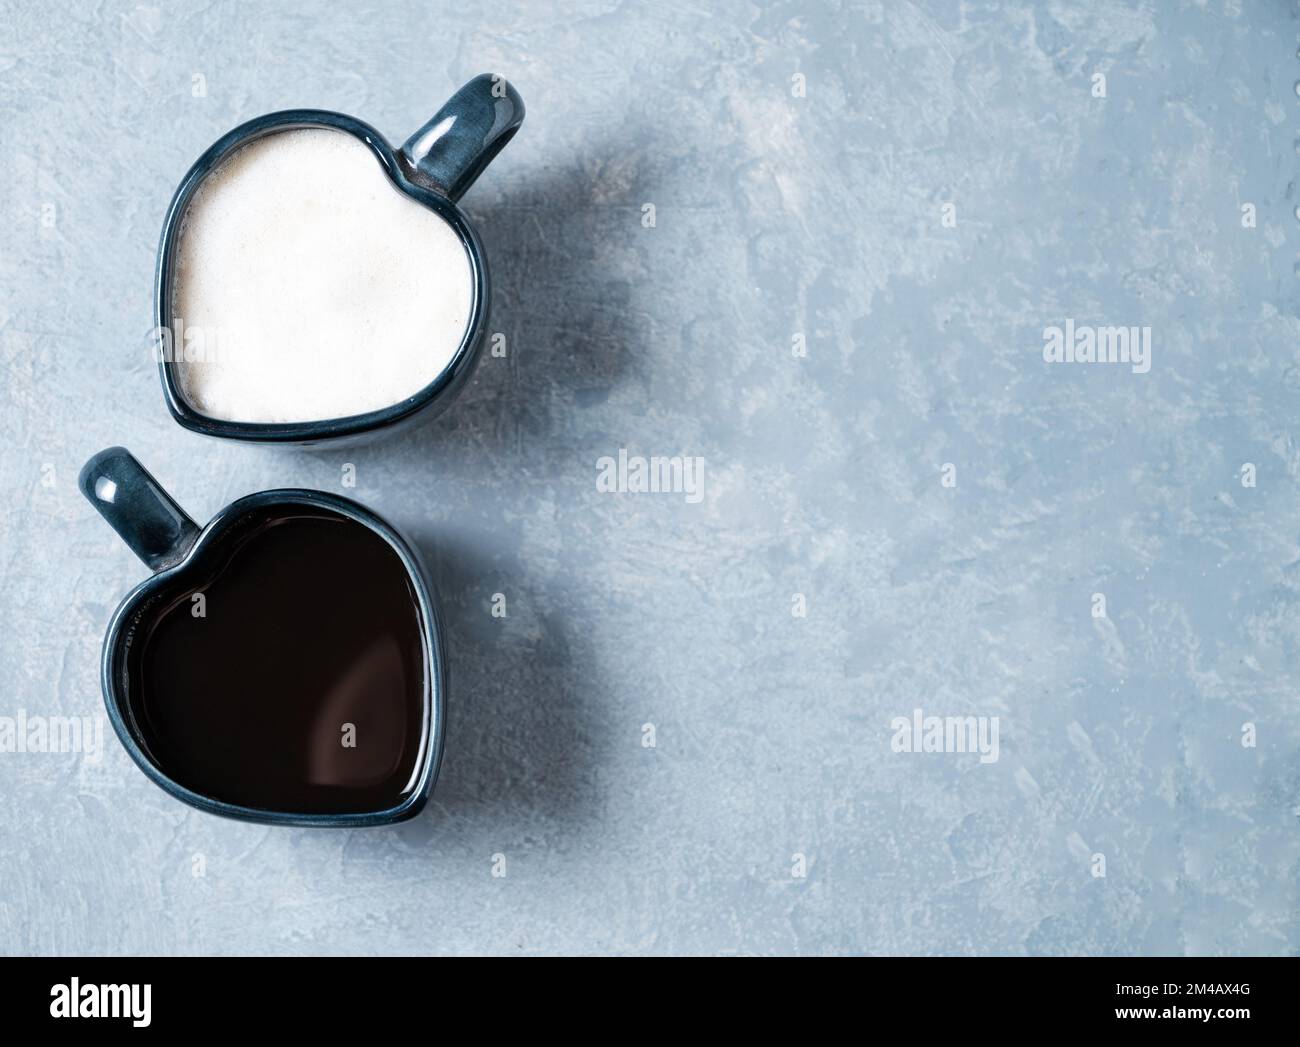 Zwei Tassen in Herzform mit frisch gebrühtem aromatischem Kaffee mit Milch und Espresso auf blauem Hintergrund. Das Konzept der gegensätzlichen Getränke. Draufsicht Stockfoto